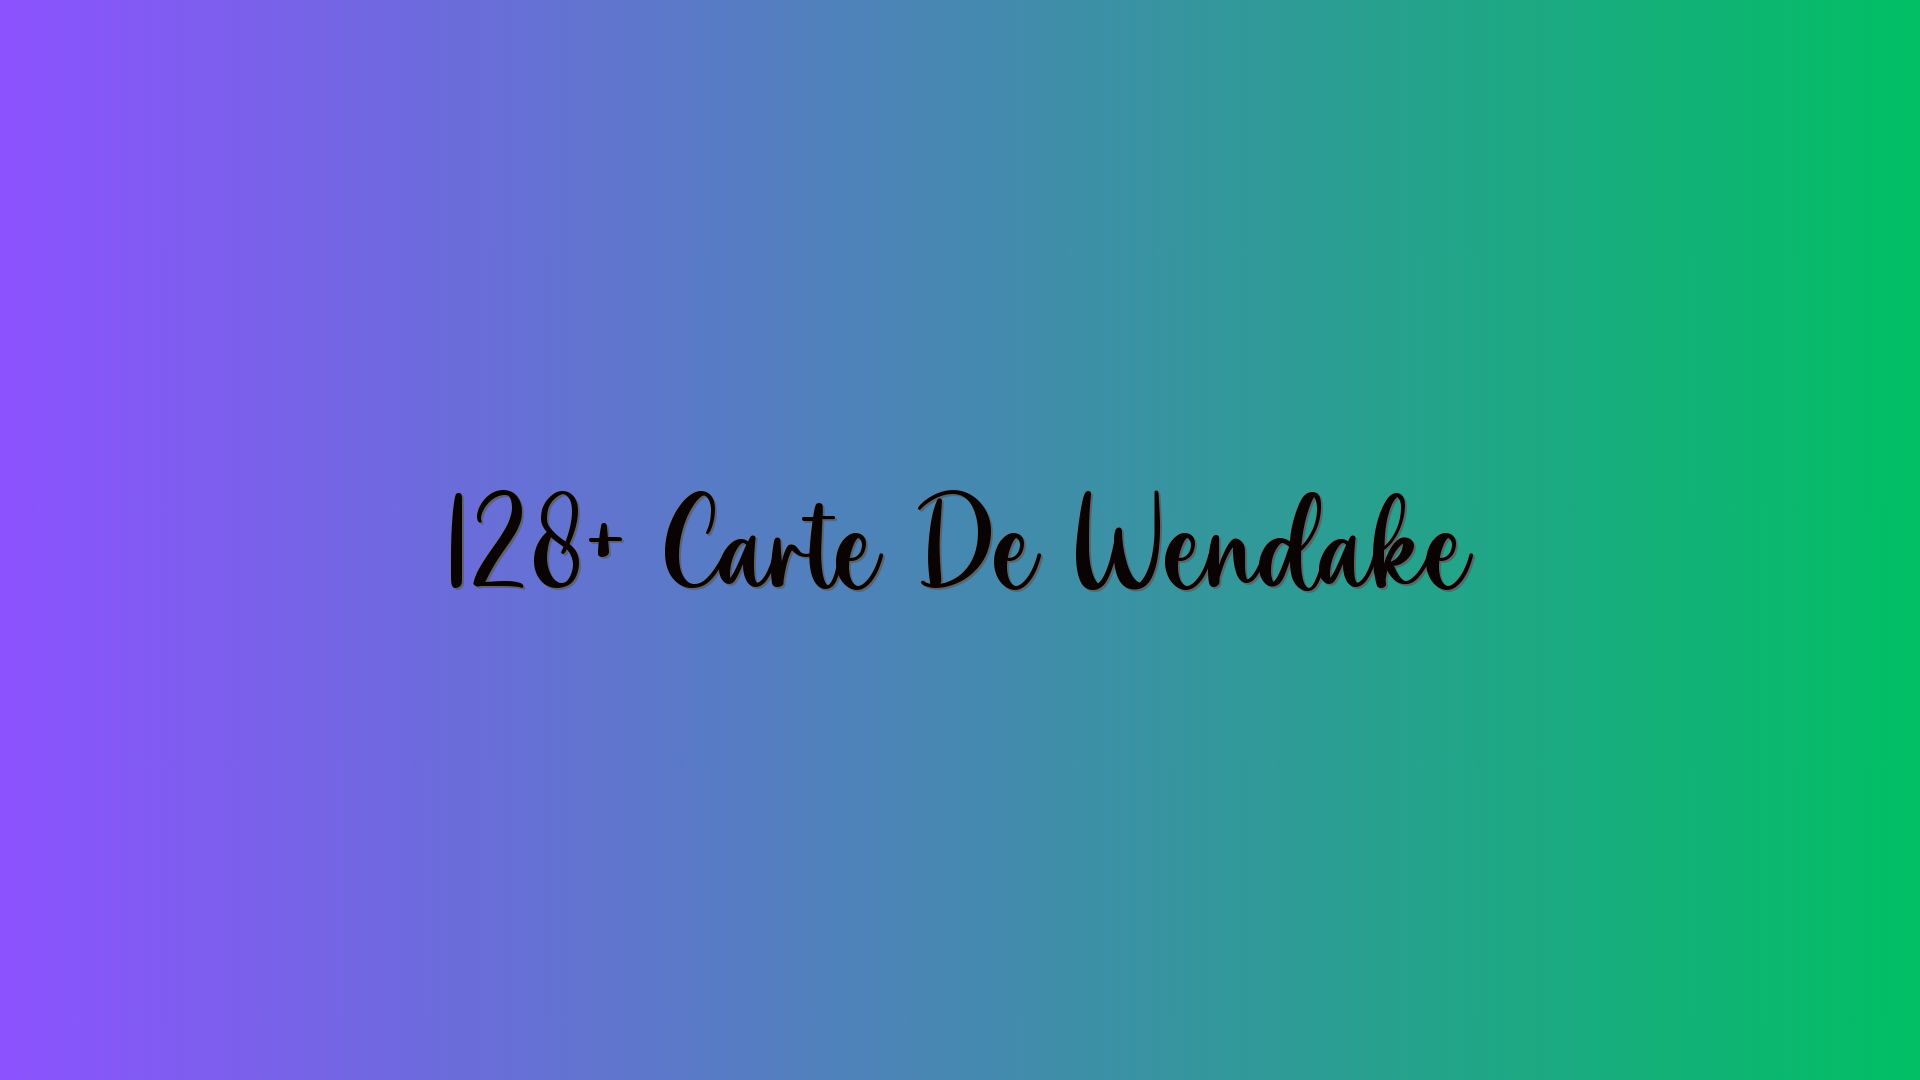 128+ Carte De Wendake